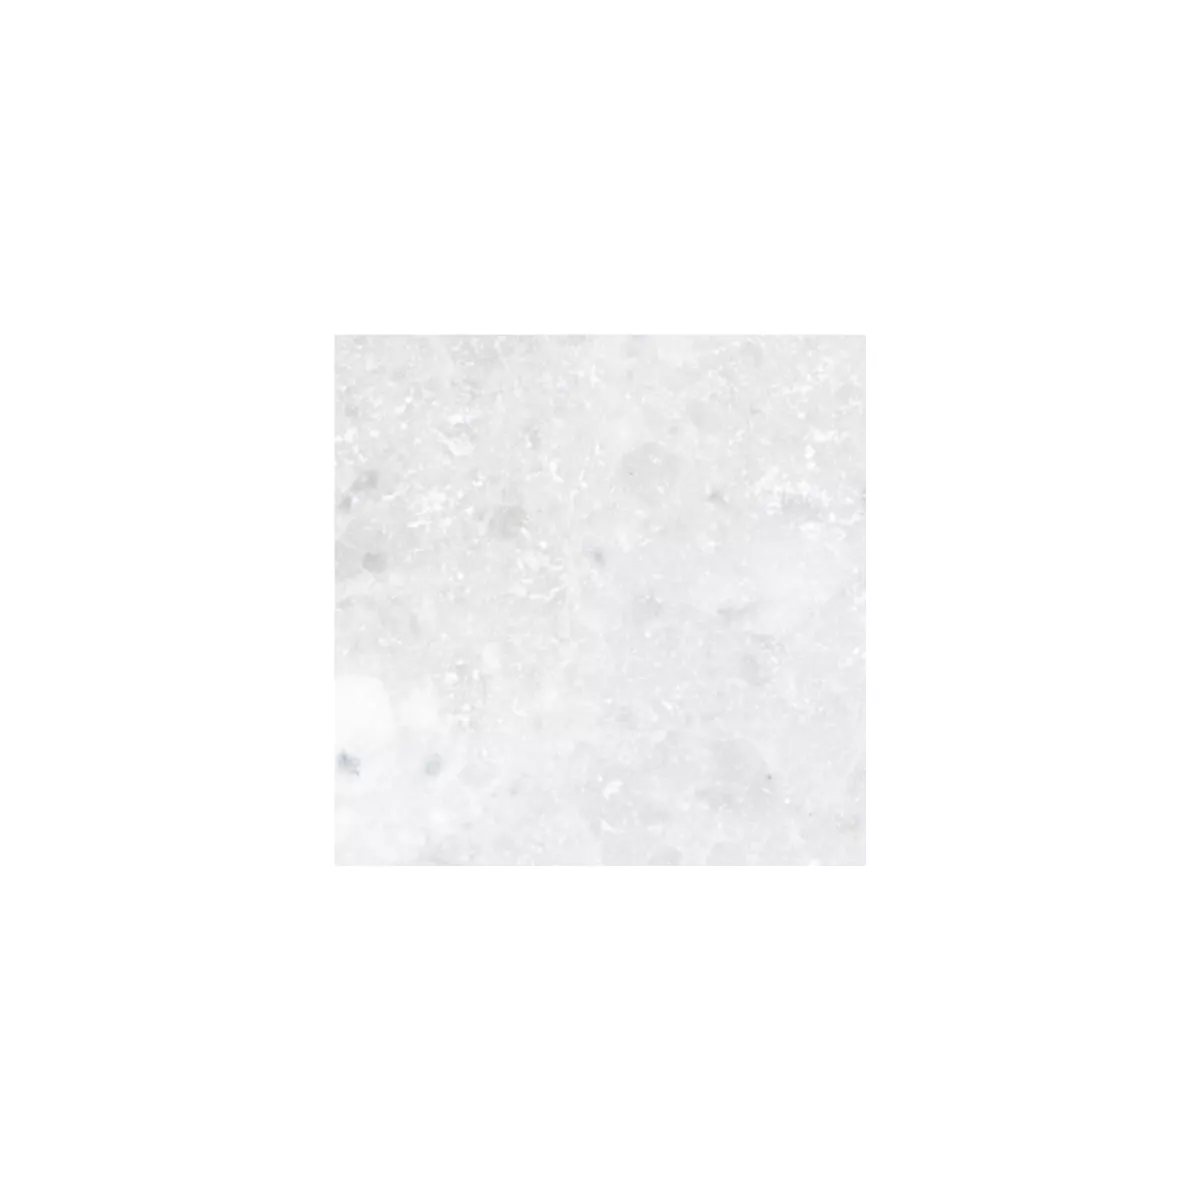 Sample Natural Stone Tiles Marble Treviso White 30,5x30,5cm